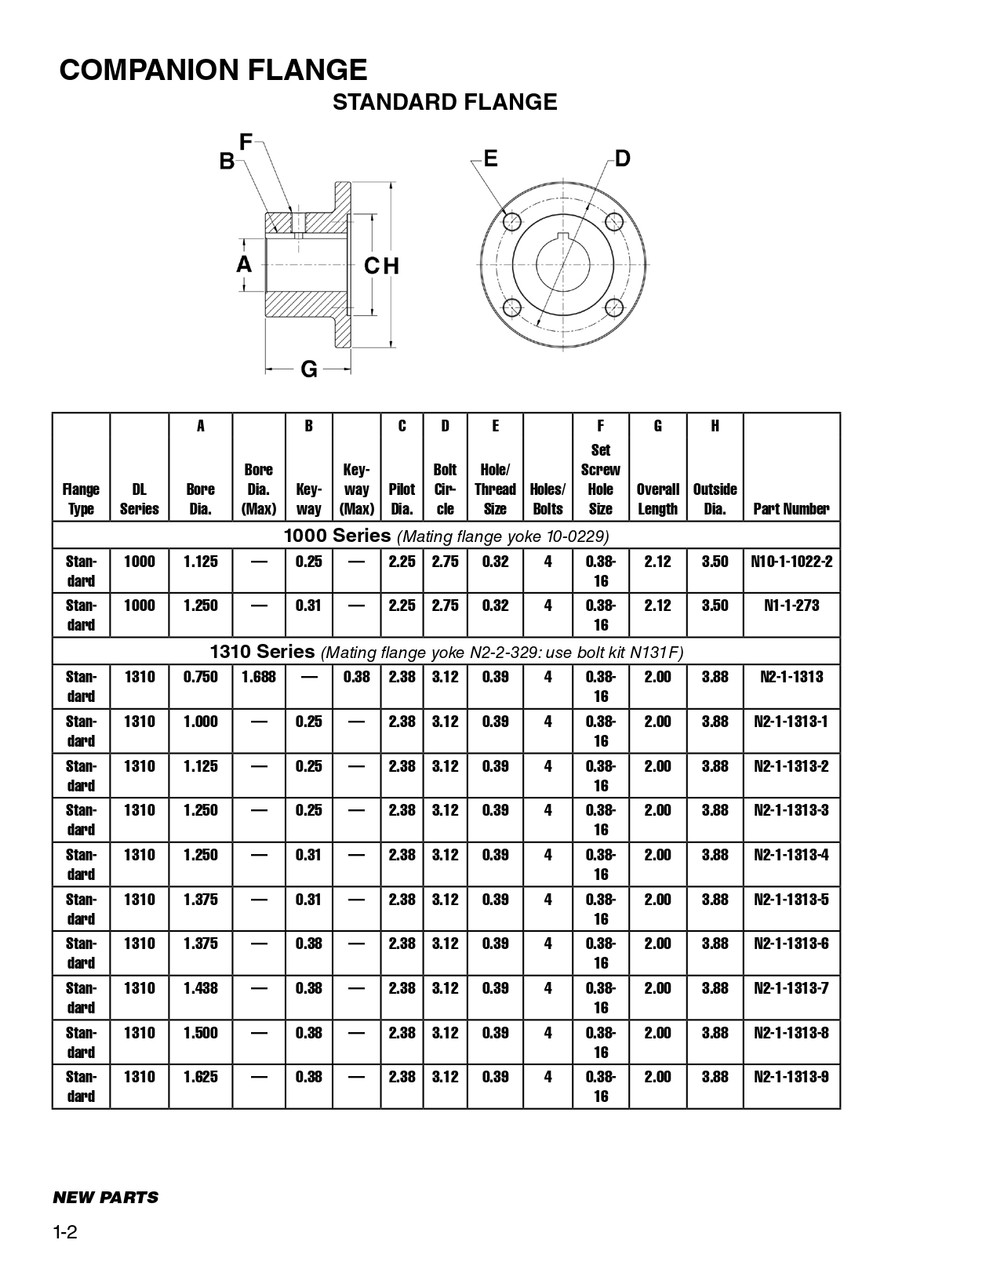 1.375" Round - Spicer® 1310 Series Standard Companion Flange  N2-1-1313-6